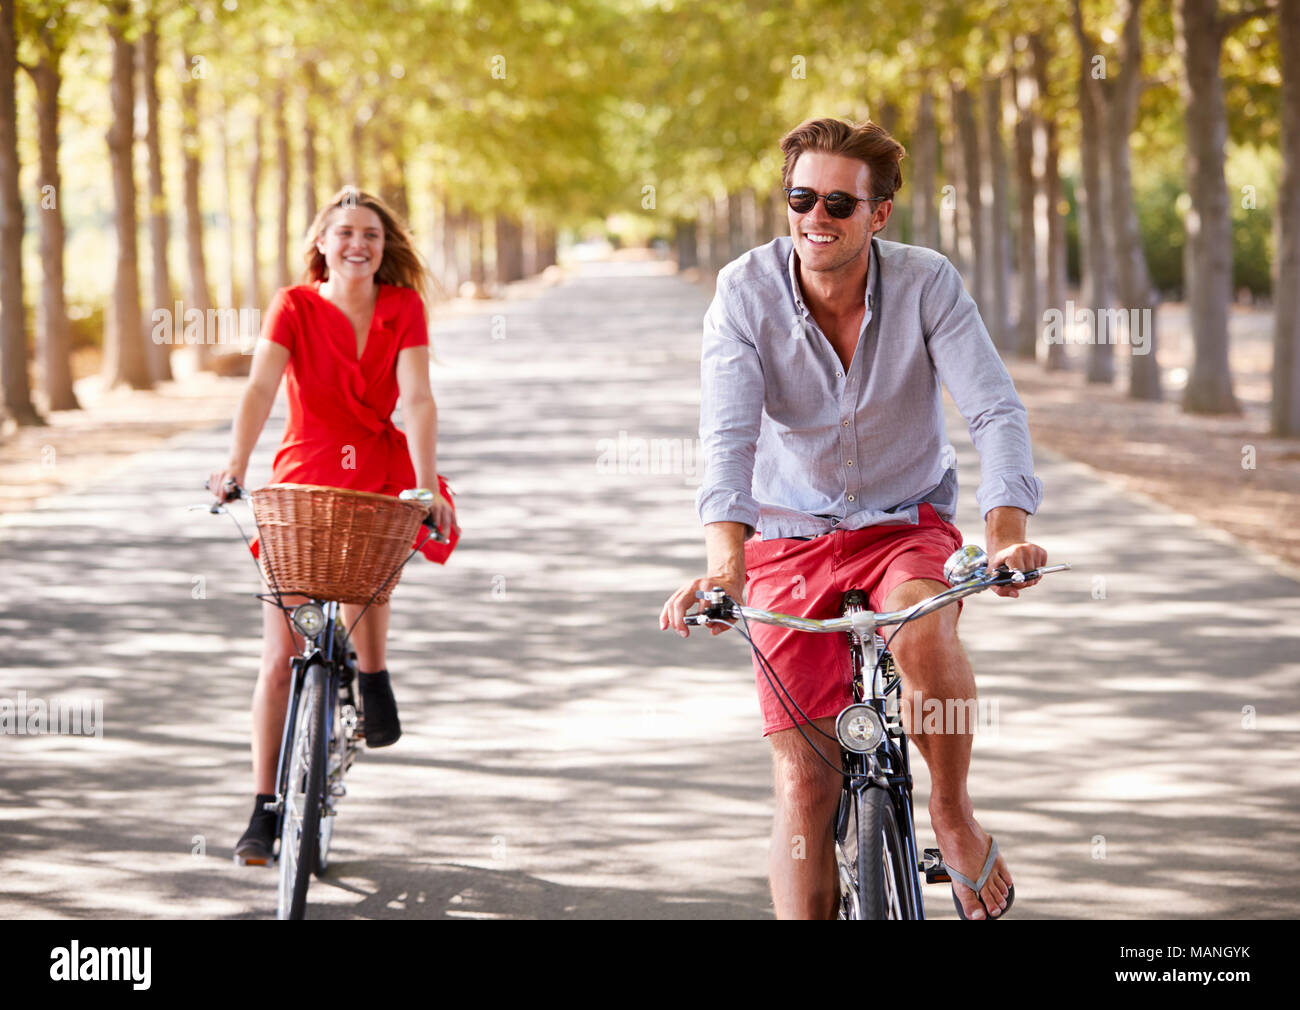 Blanco joven pareja adulta andando en bicicleta en una calle arbolada. Foto de stock